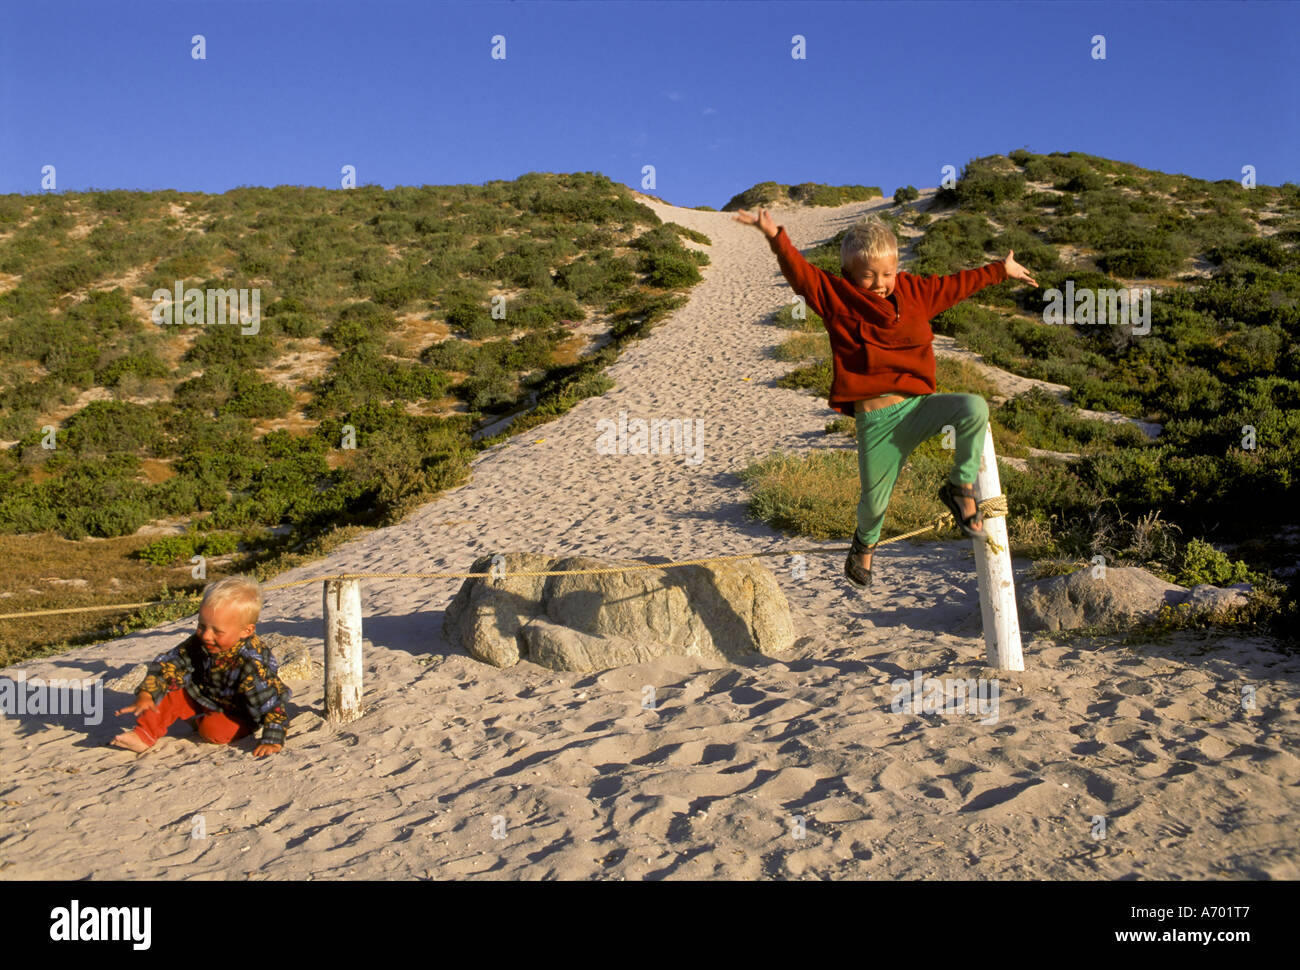 Los niños pequeños están saltando a través de un cable en una duna, Tittis Bay, Sudáfrica Foto de stock